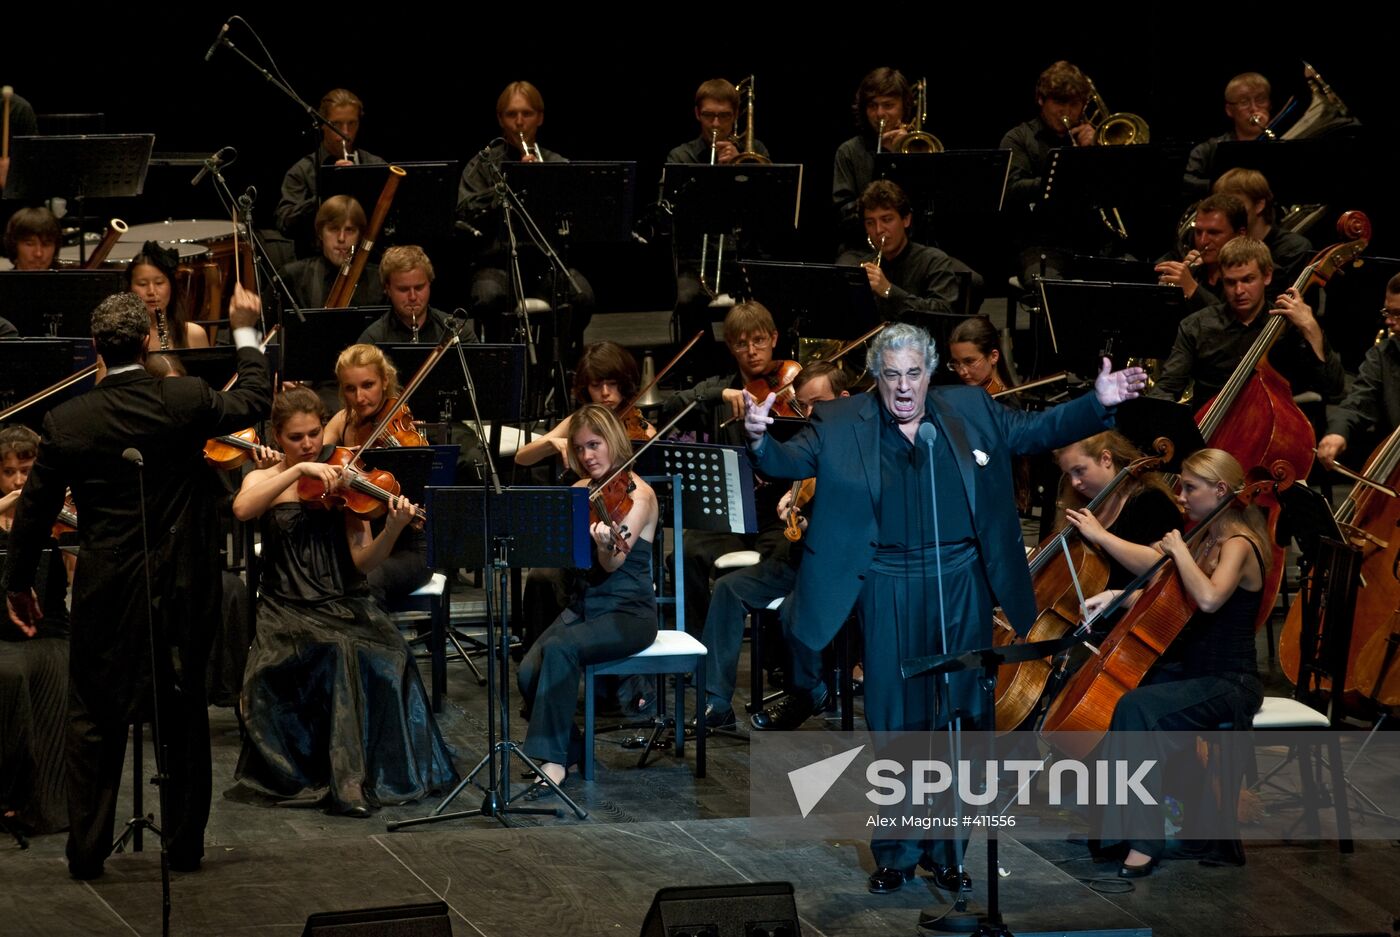 Spanish tenor Plácido Domingo performs live in Russia